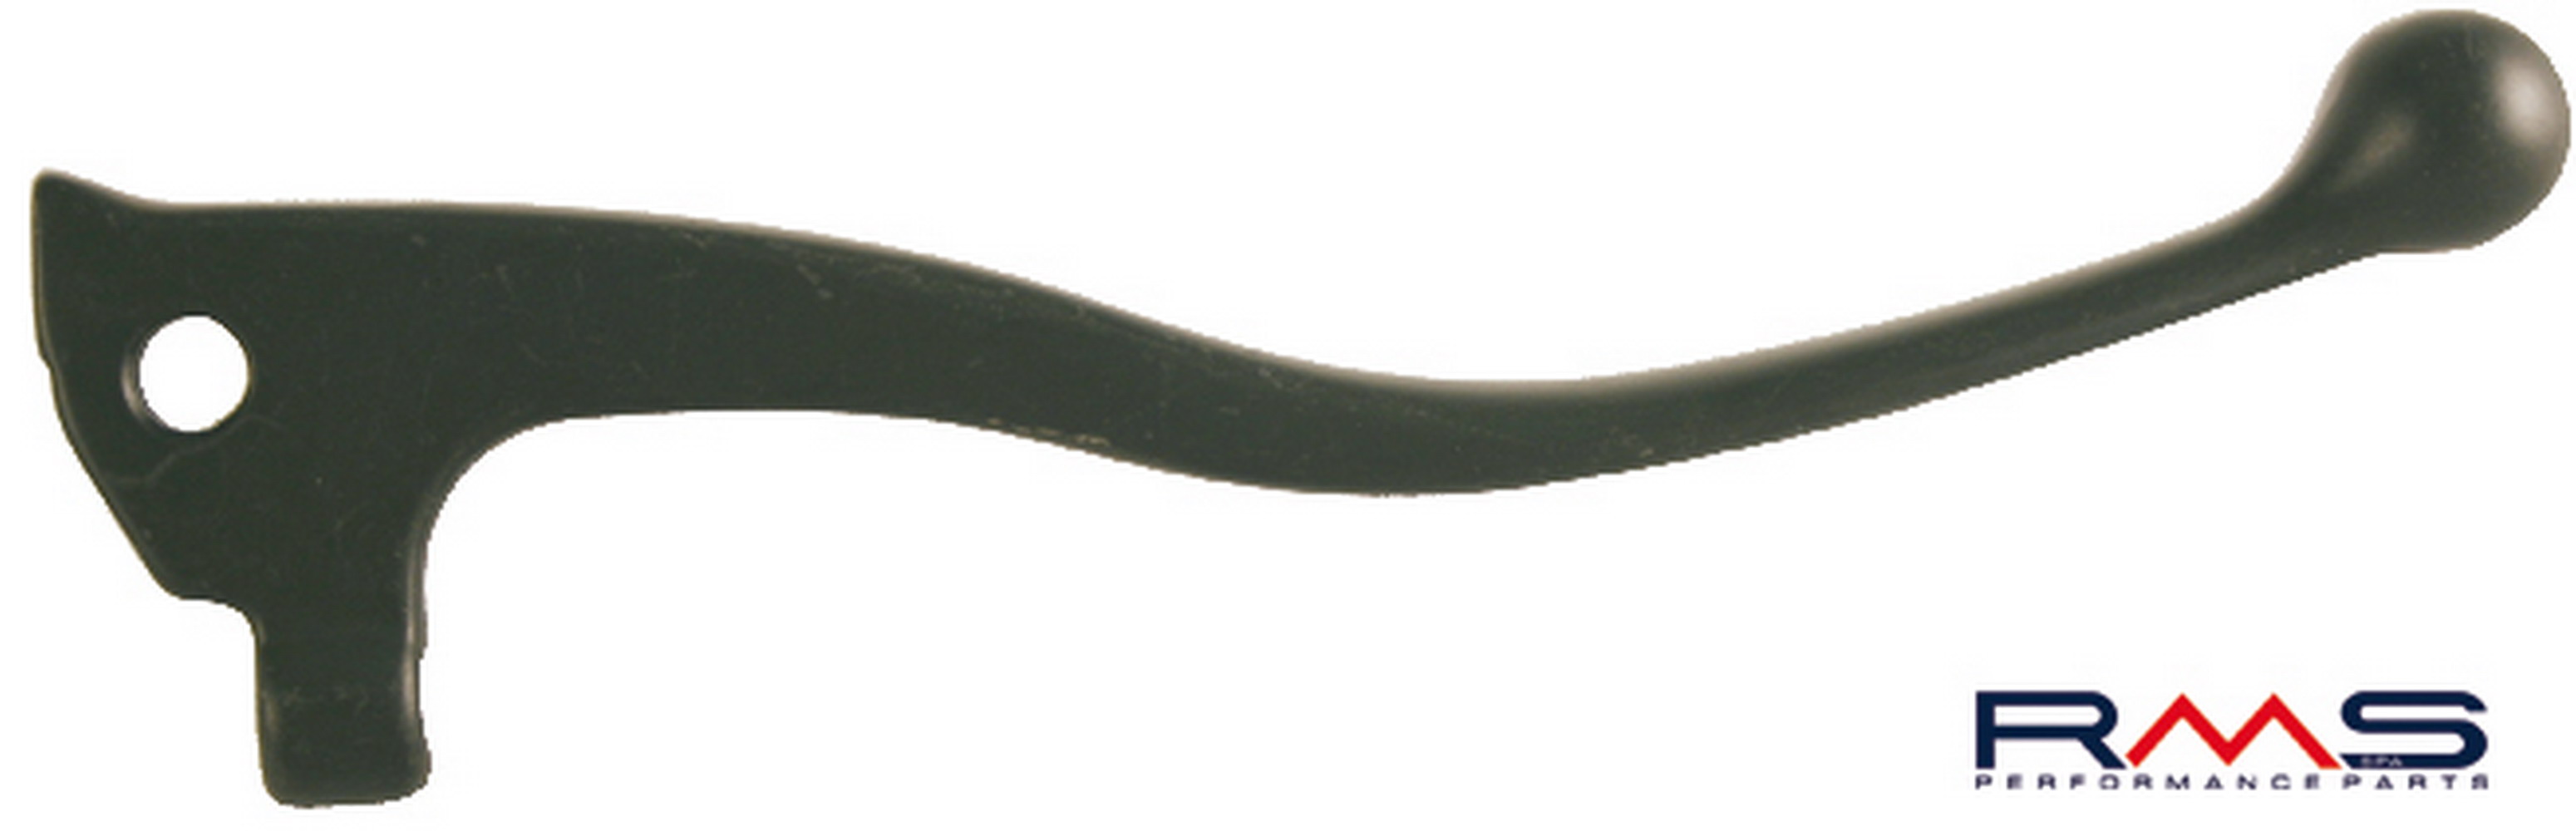 Obrázek produktu Páčka RMS 184120611 pravý černý